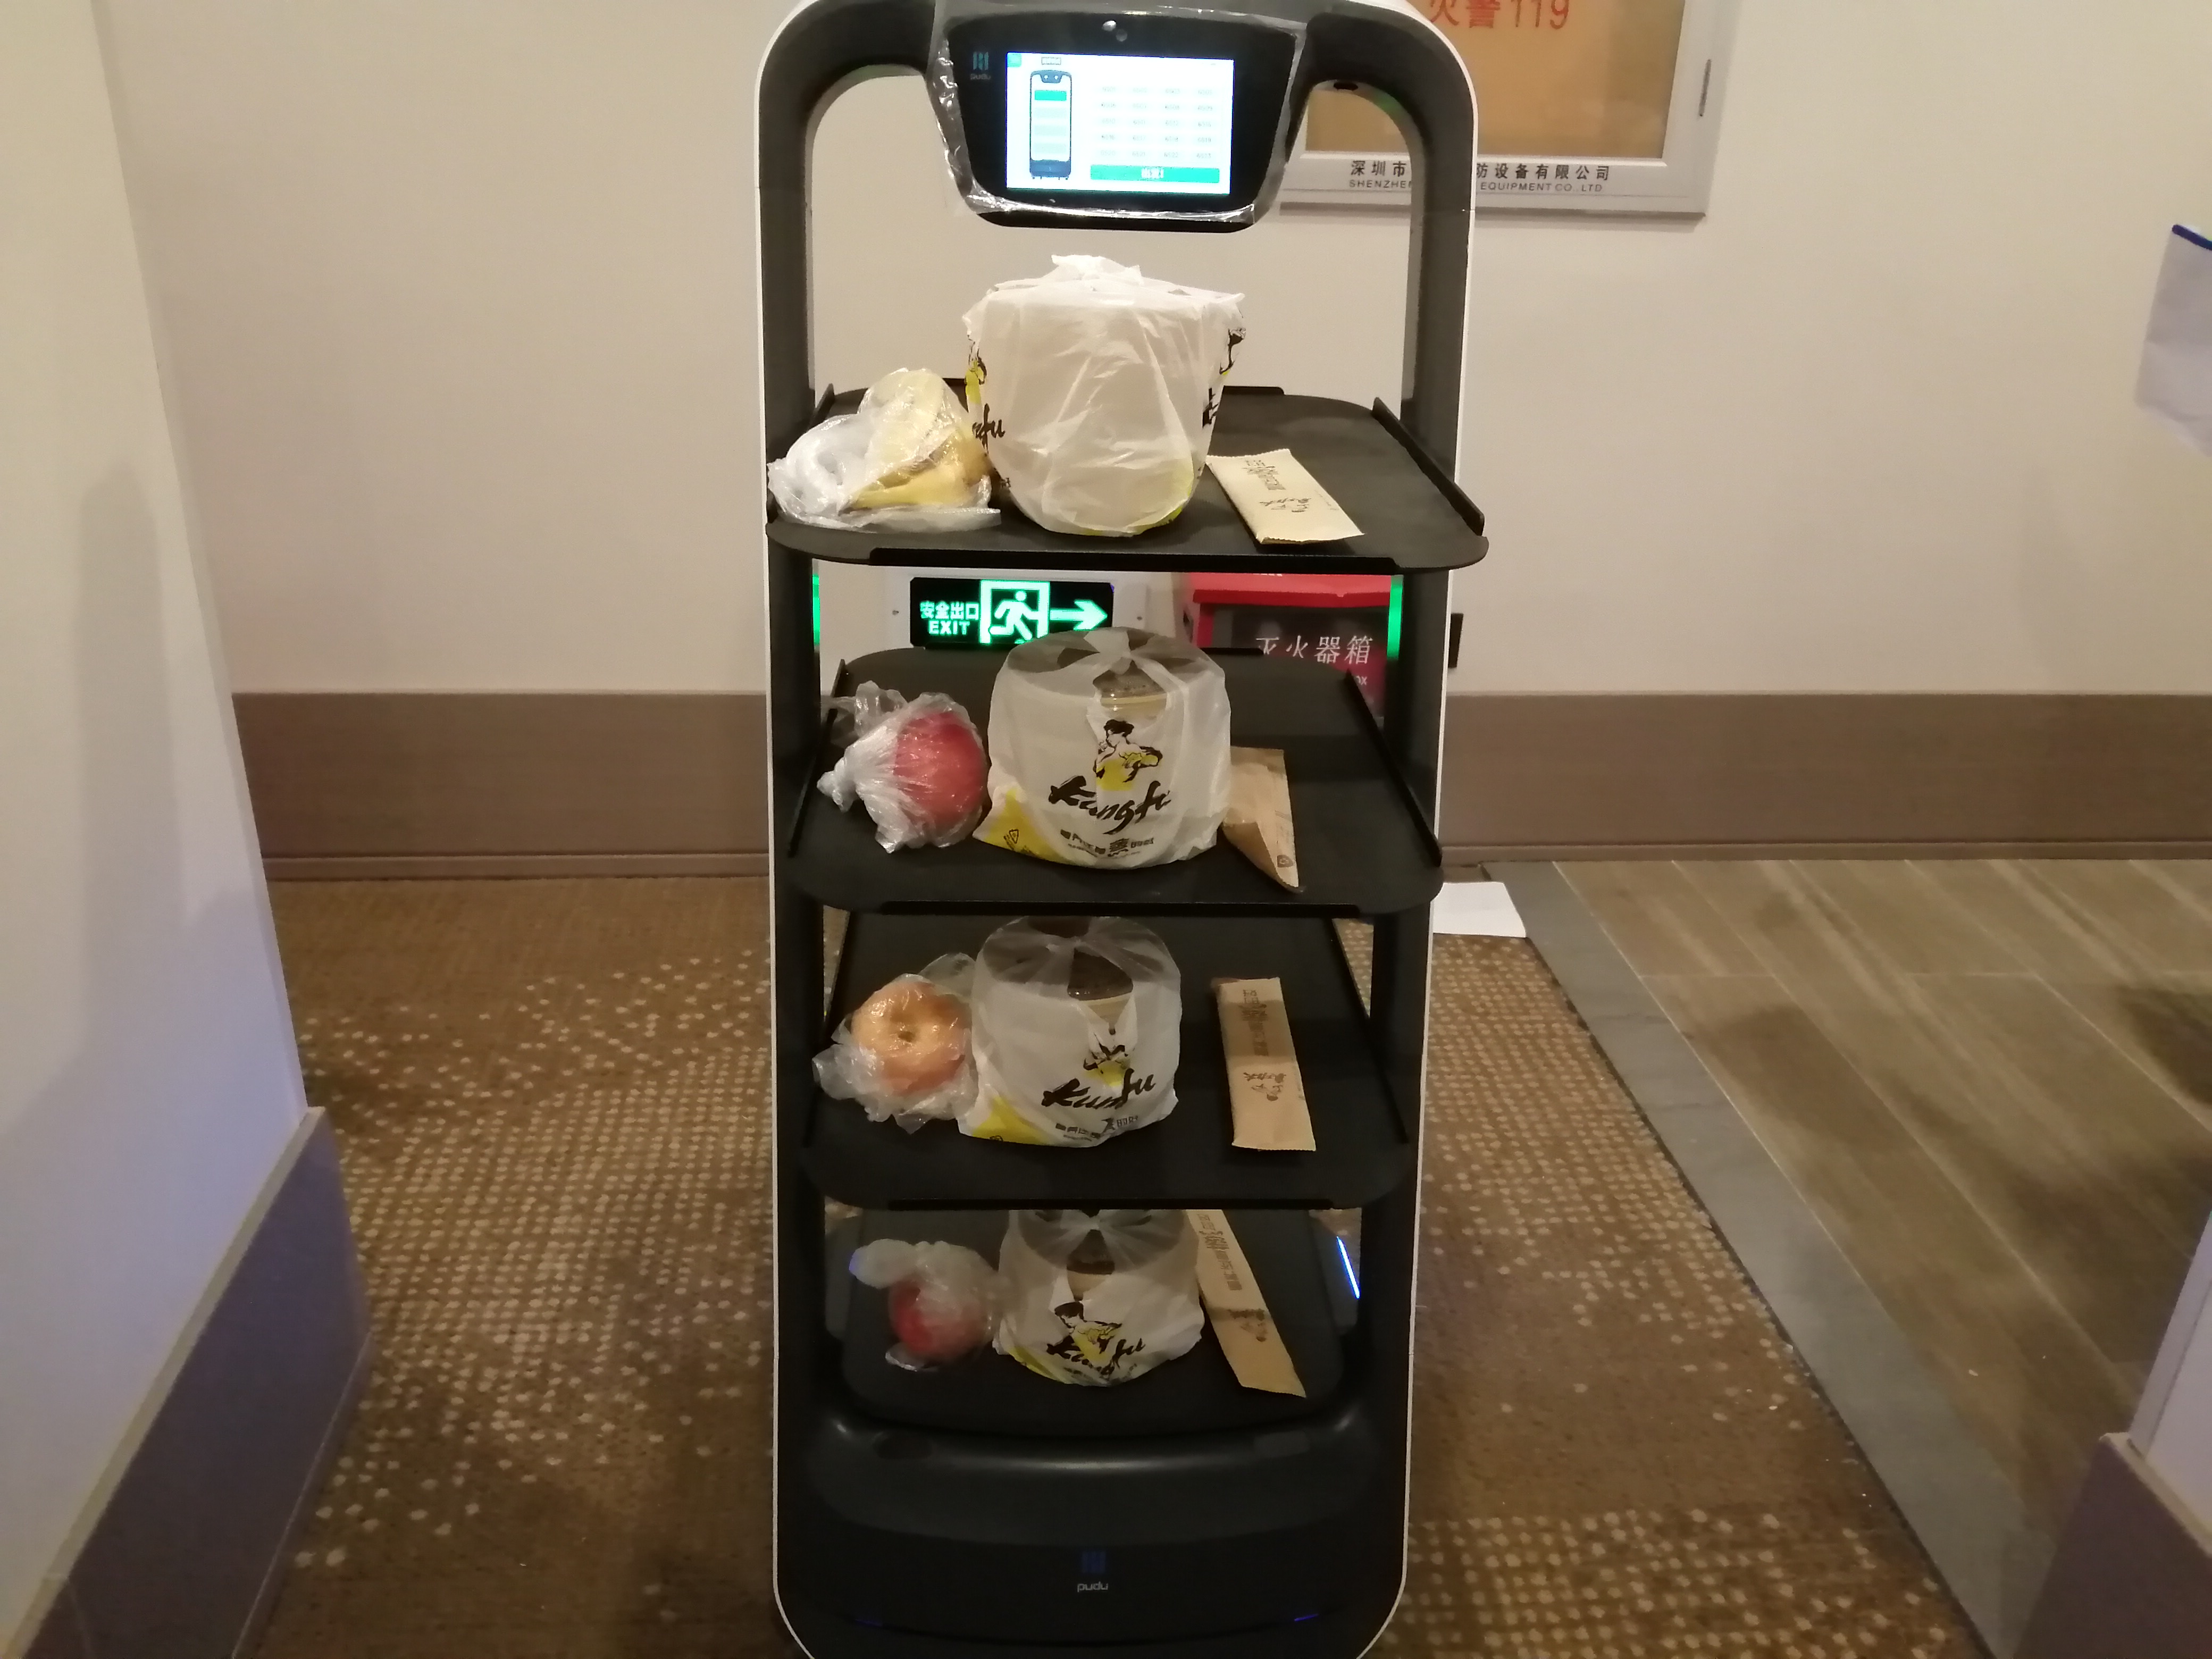 记者在现场看到,送餐机器人并没有像一般餐厅的机器人一样做成人形